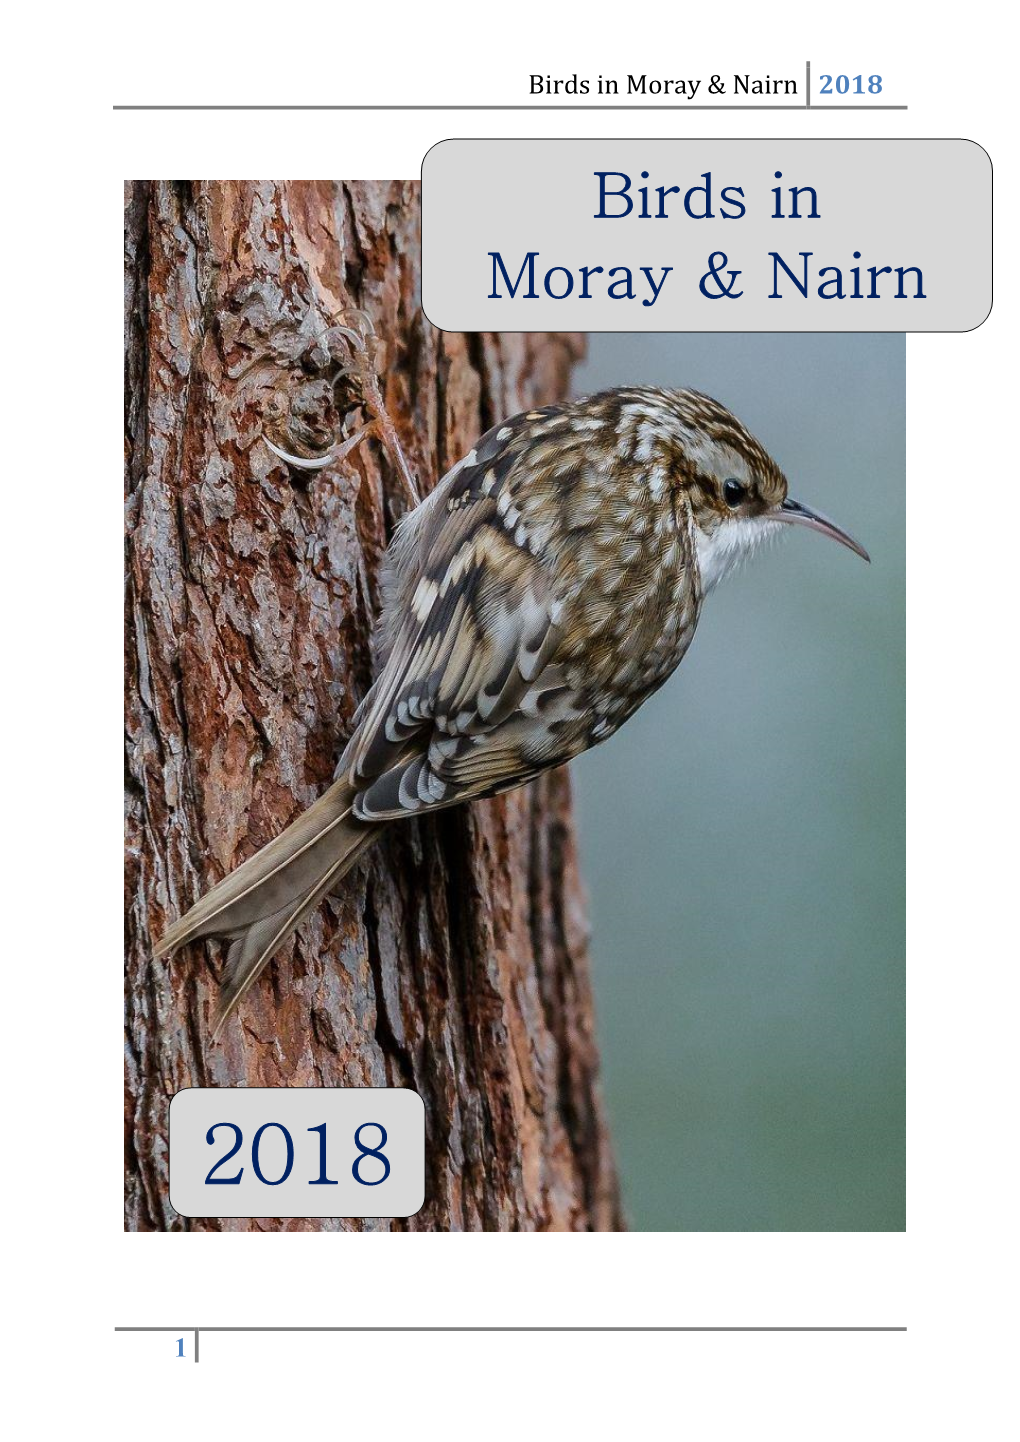 Birds in Moray & Nairn 2018